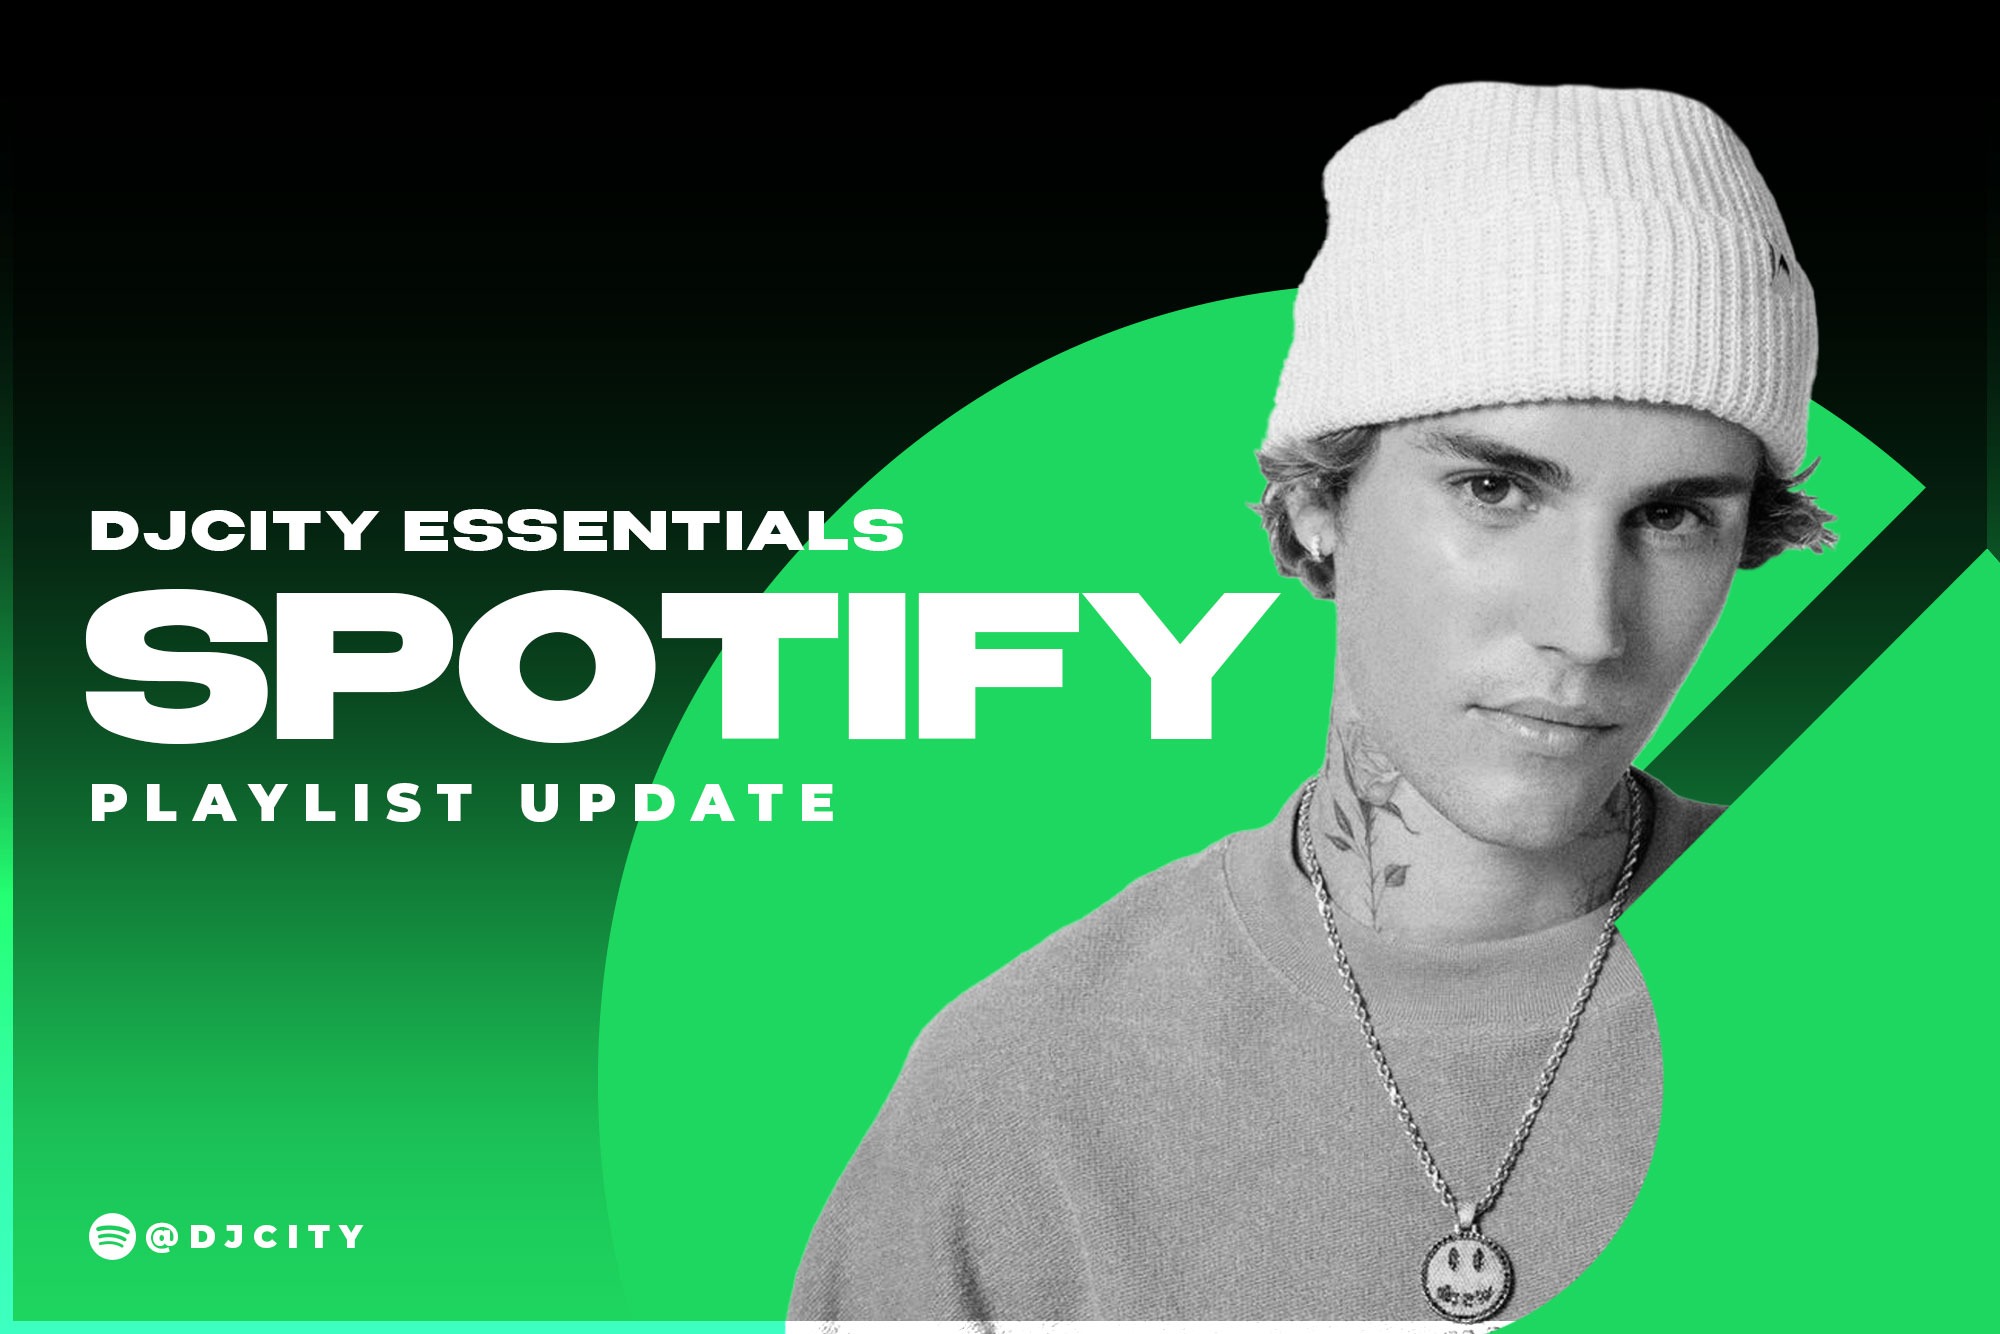 DJcity’s Spotify Playlist Update: Mar. 23